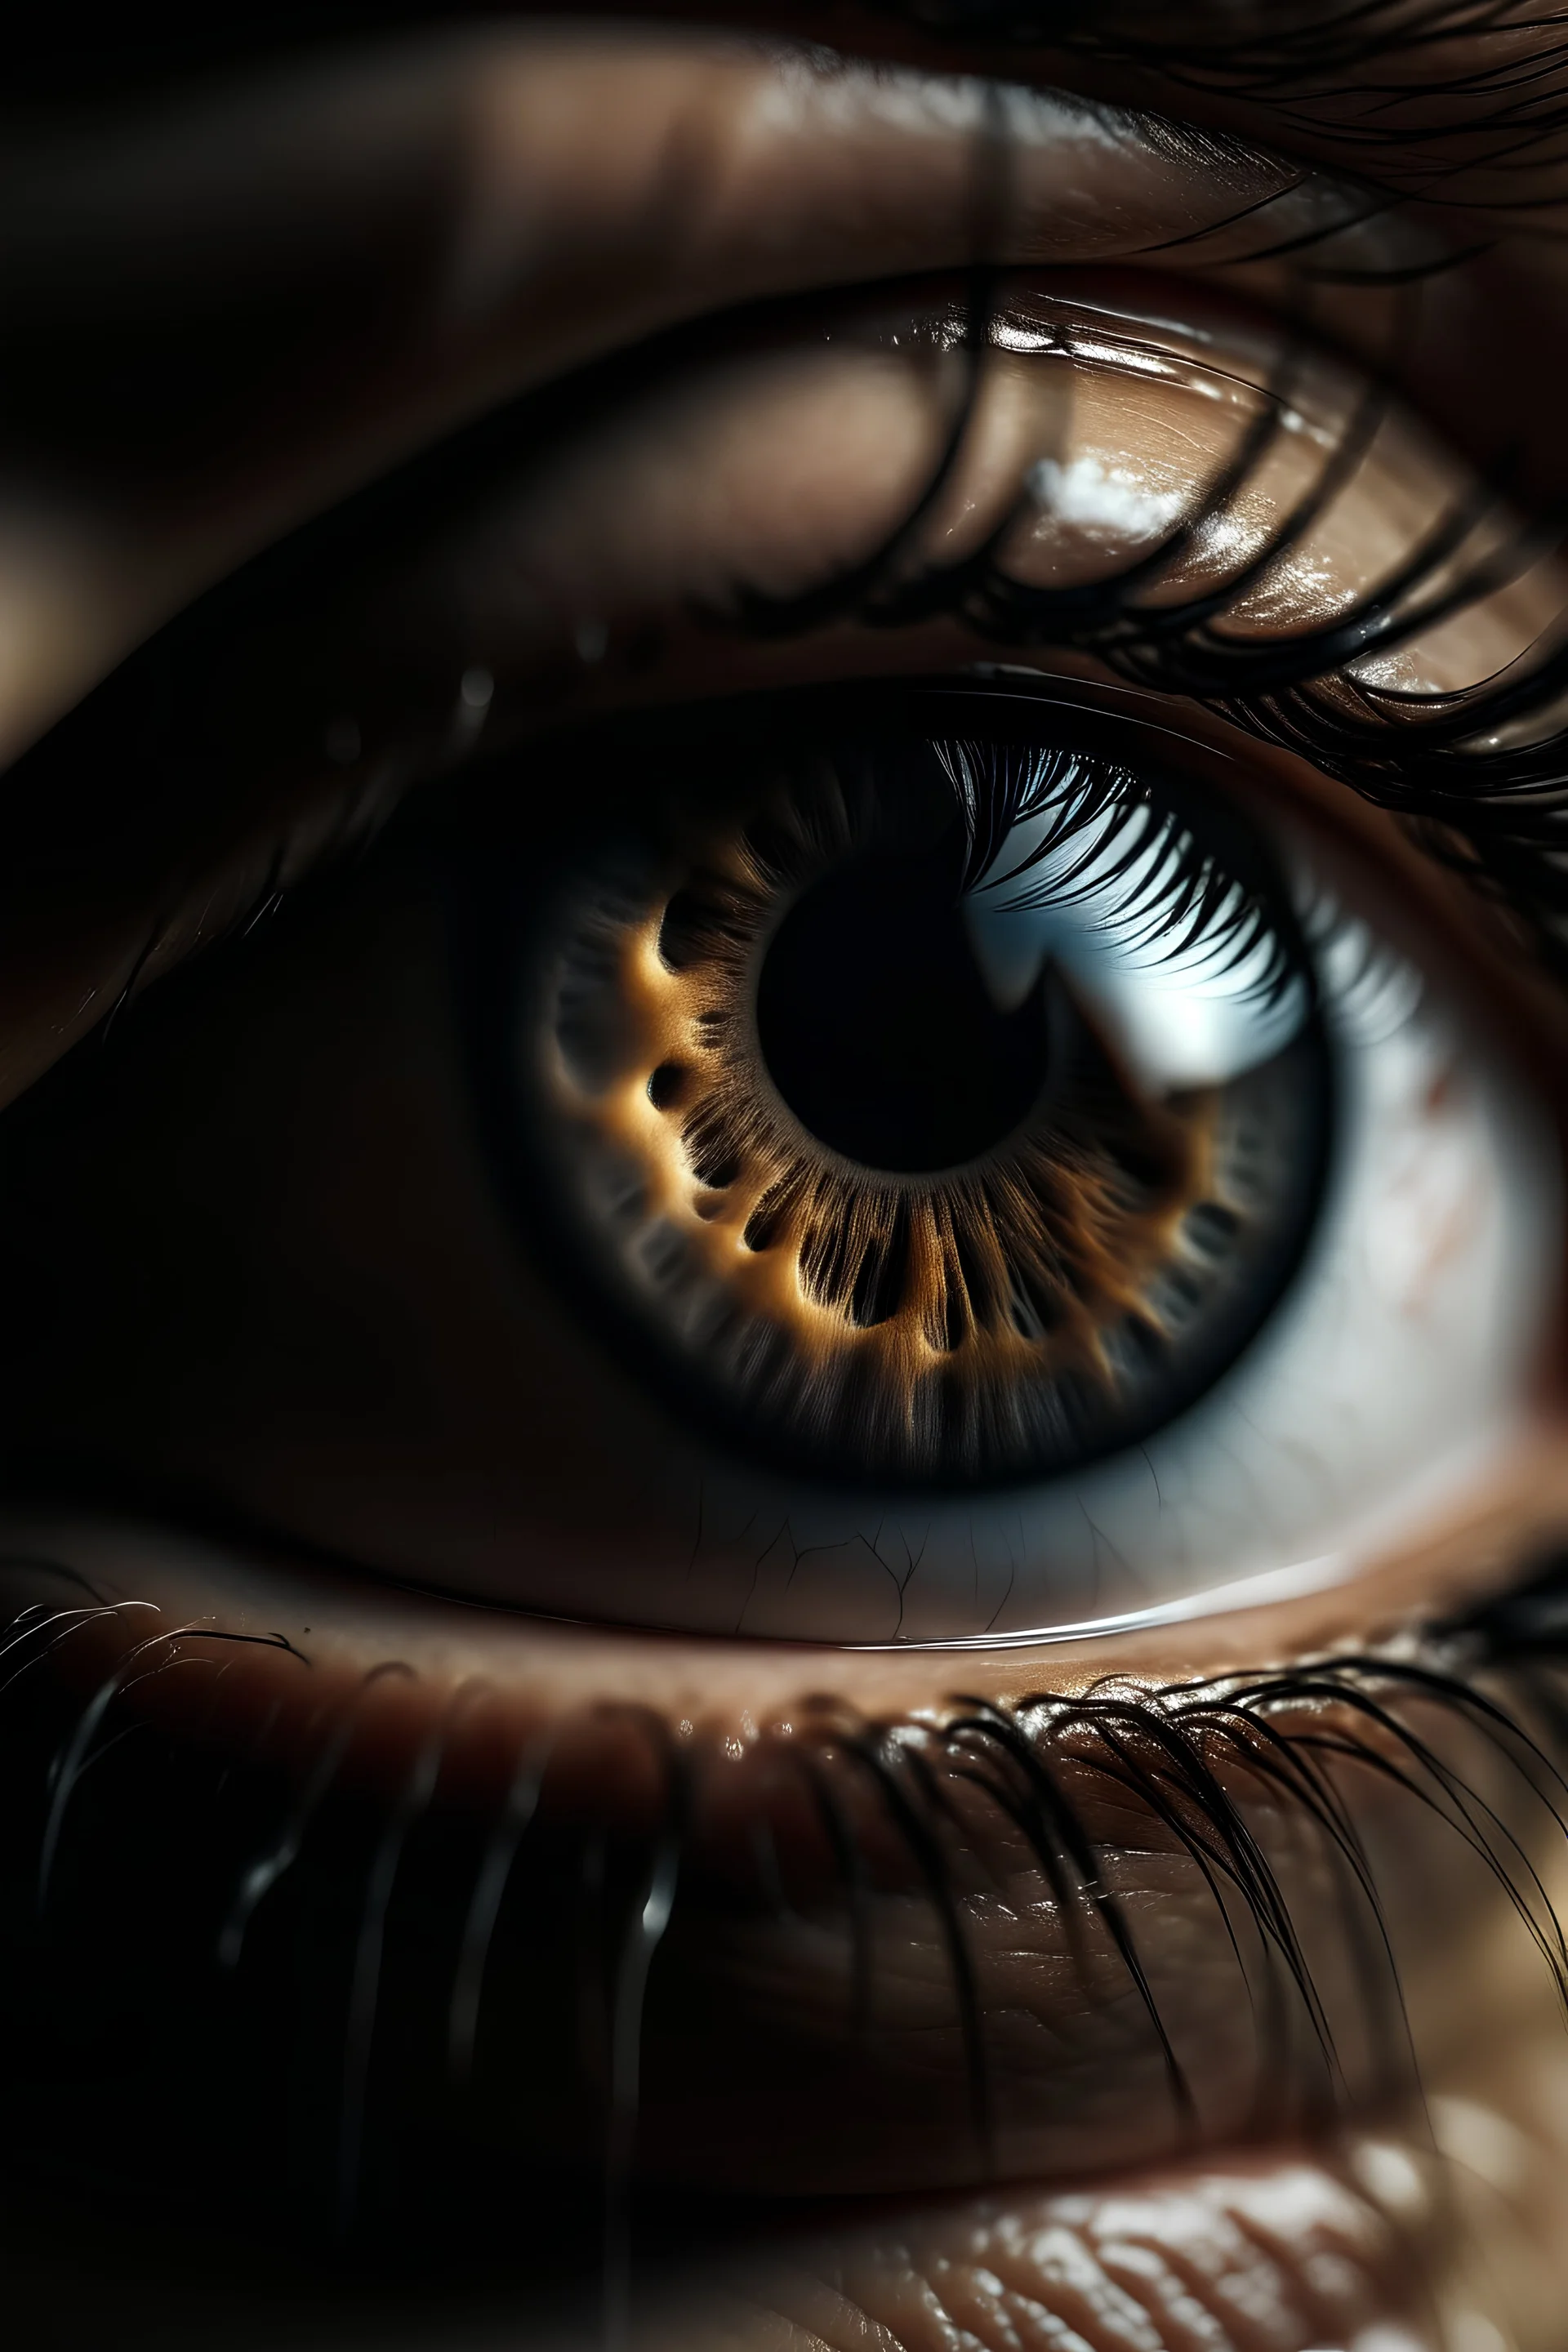 صورة سنمائية مجسمة لعين الانسان مع دمع خفيف في الحدقة